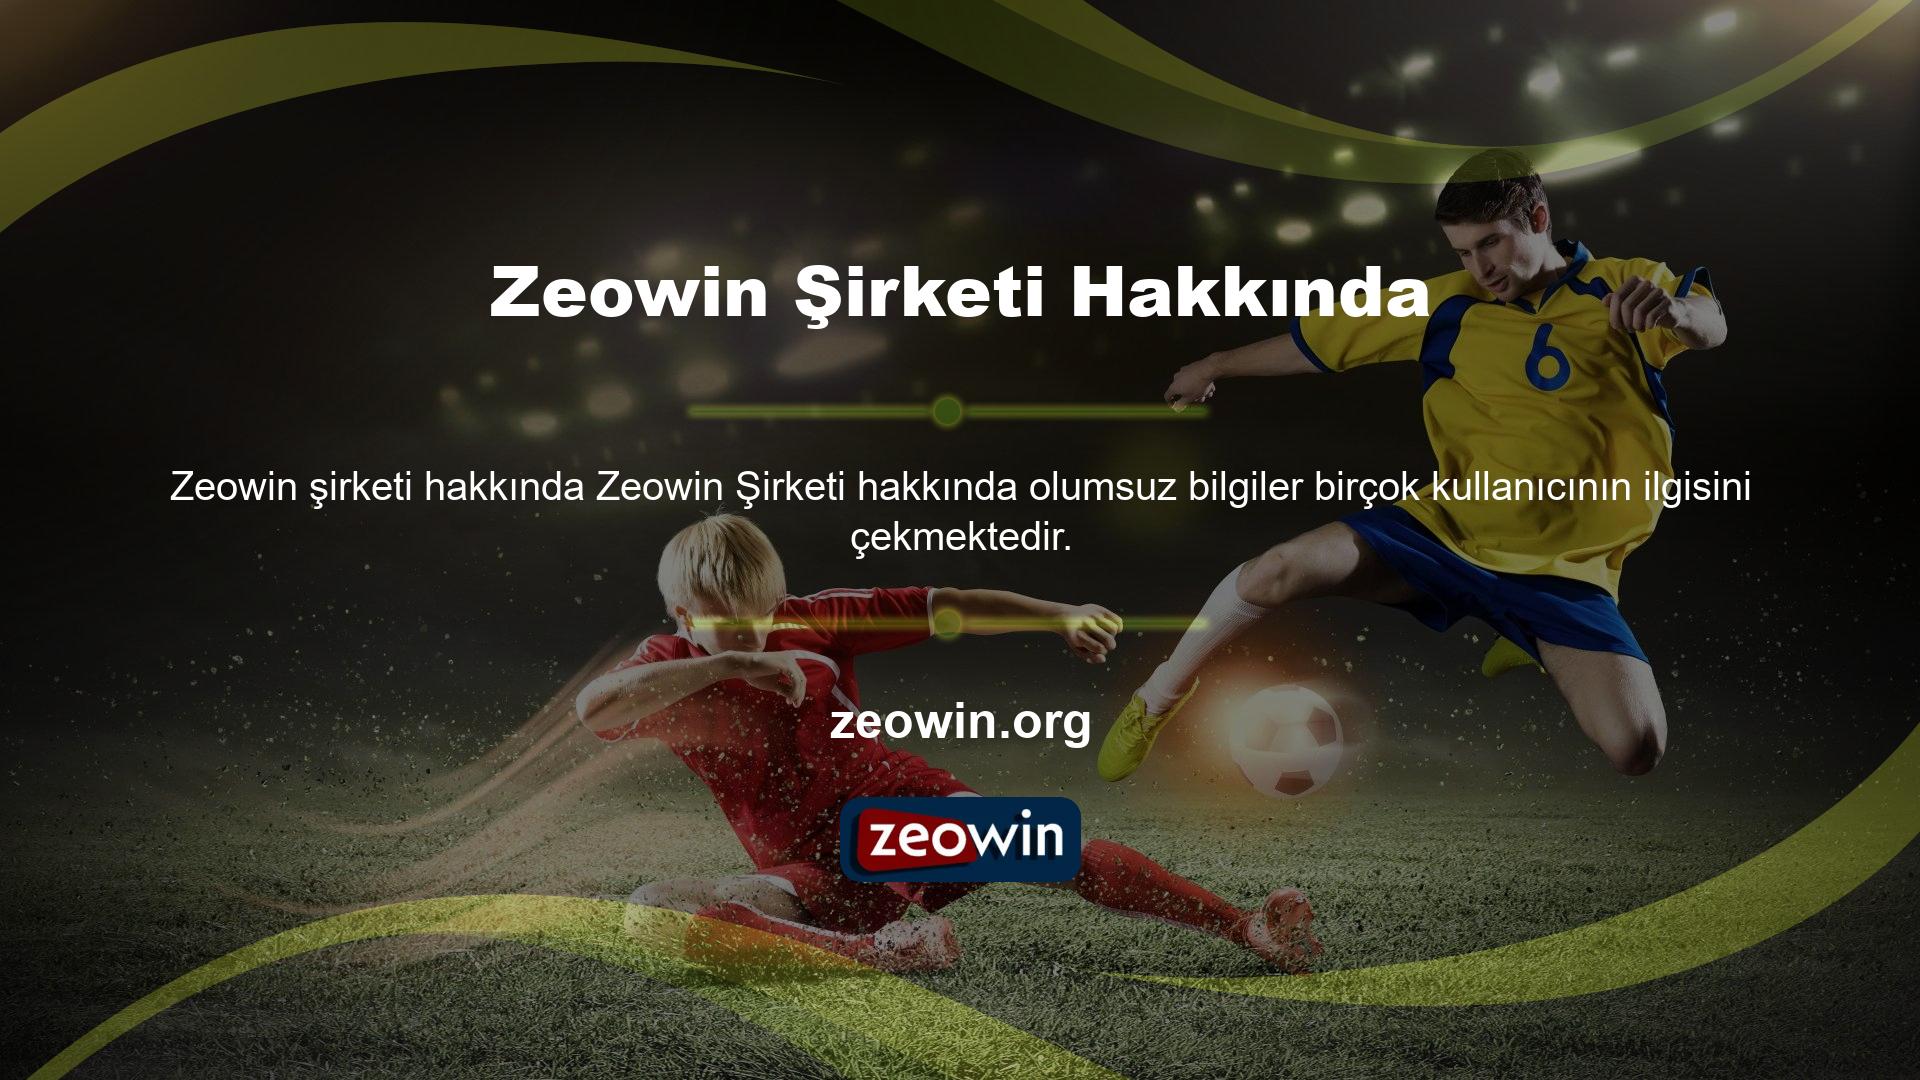 Yabancı bir şirkete ait olan Zeowin, üyelerine birçok oyun kategorisi sunmaktadır